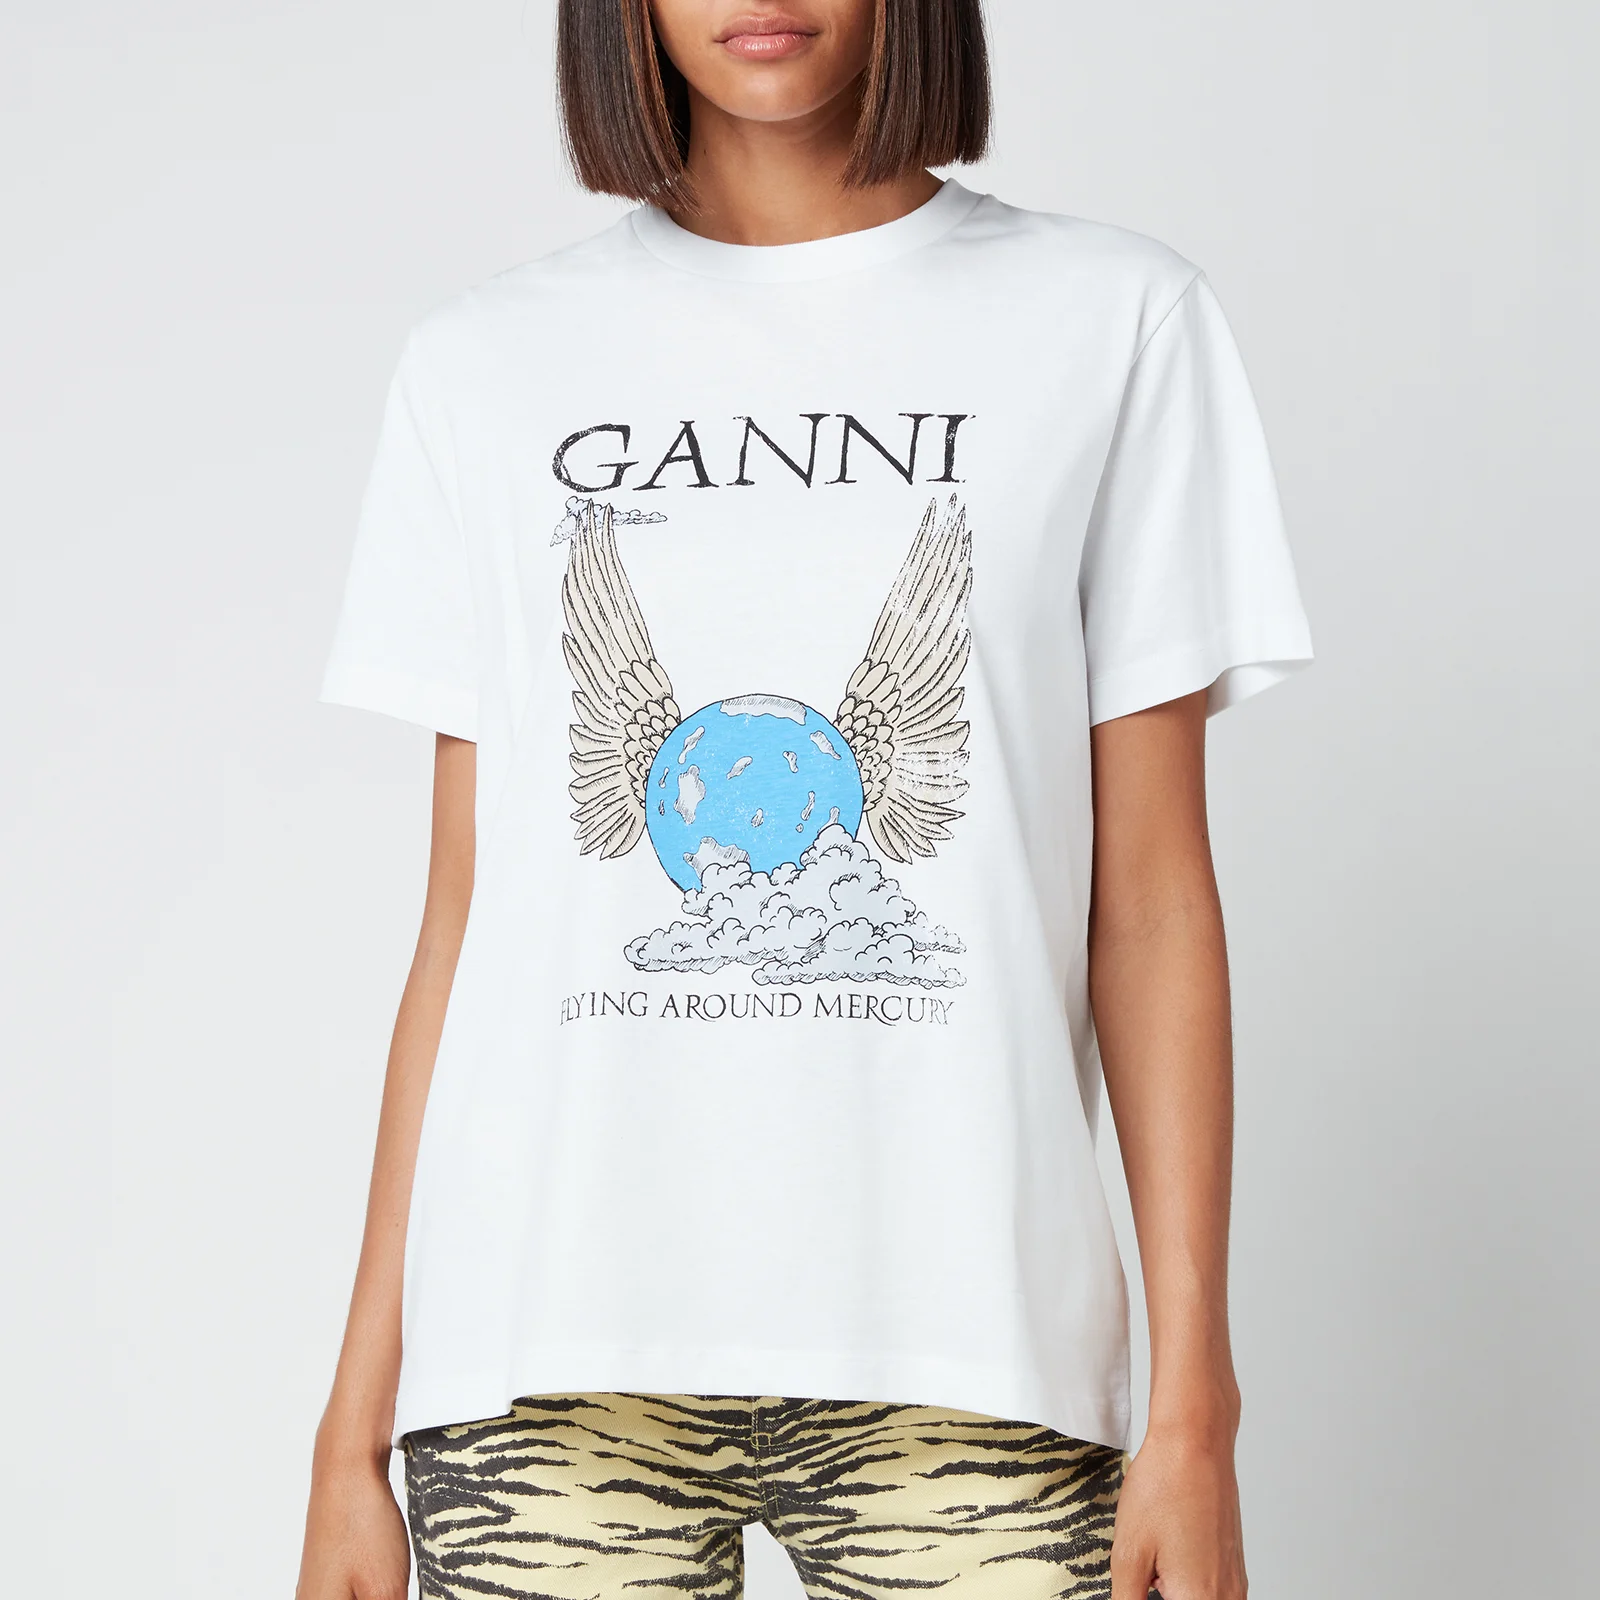 Ganni Women's Flying Around Mercury T-Shirt - Bright White Image 1